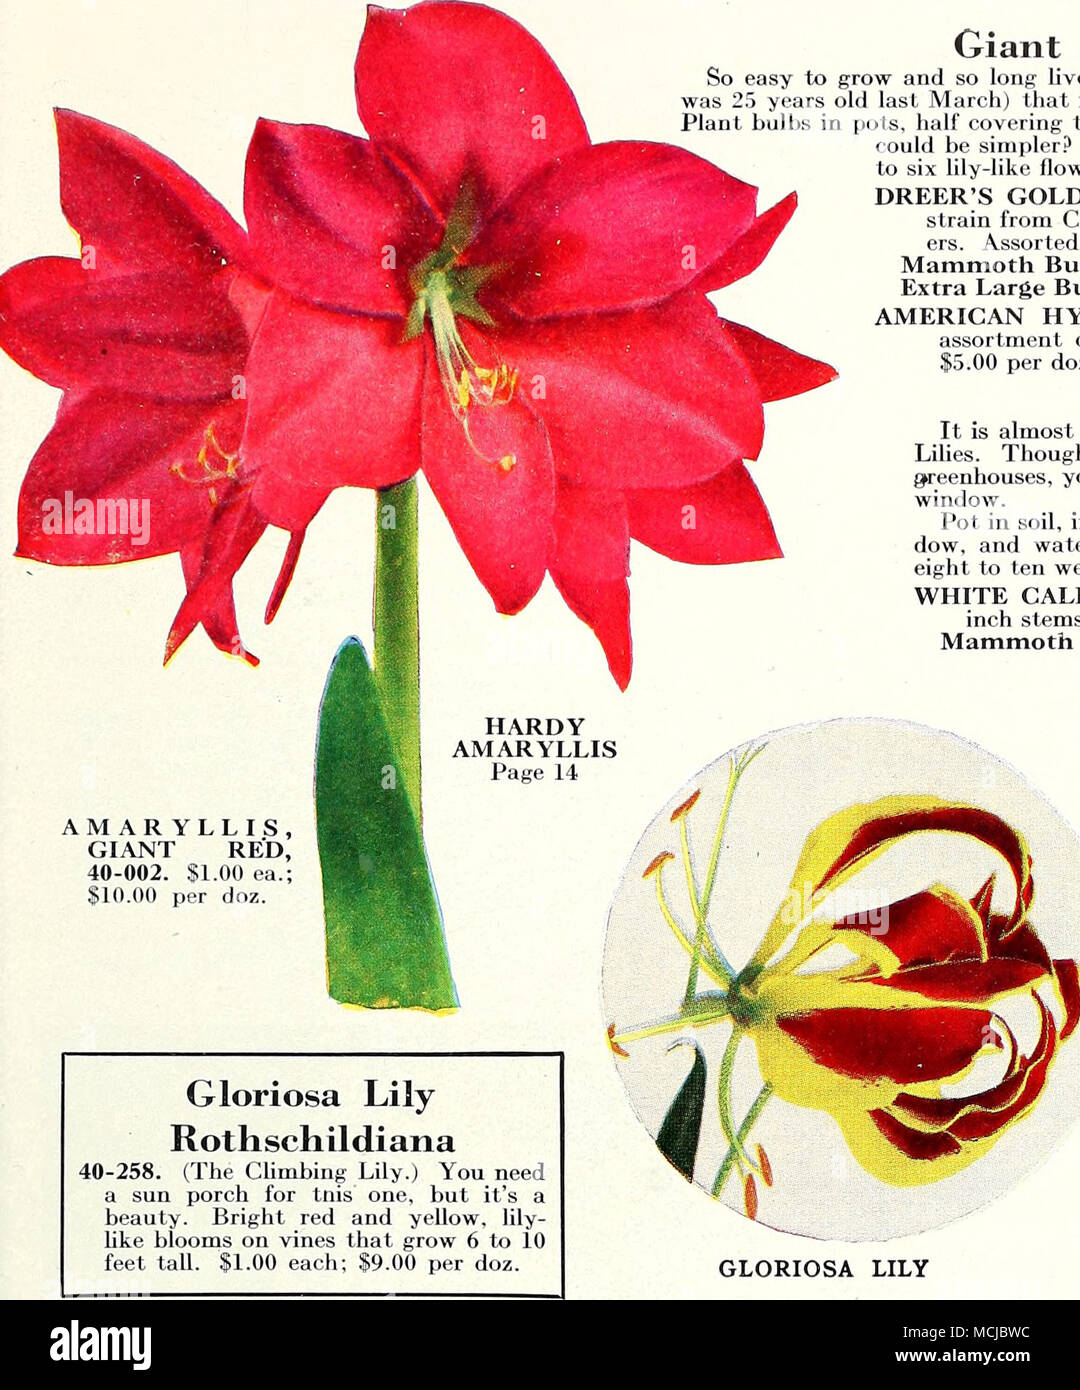 AMARYLLIS, gigante roja, 40-002. $ ea.;  por doz. Lily gloriosa  Rothschildiana 40-258. (La escalada Lily.) Usted necesita un solarium para  tnis, pero es una belleza. Rojo brillante y amarillo, lily-